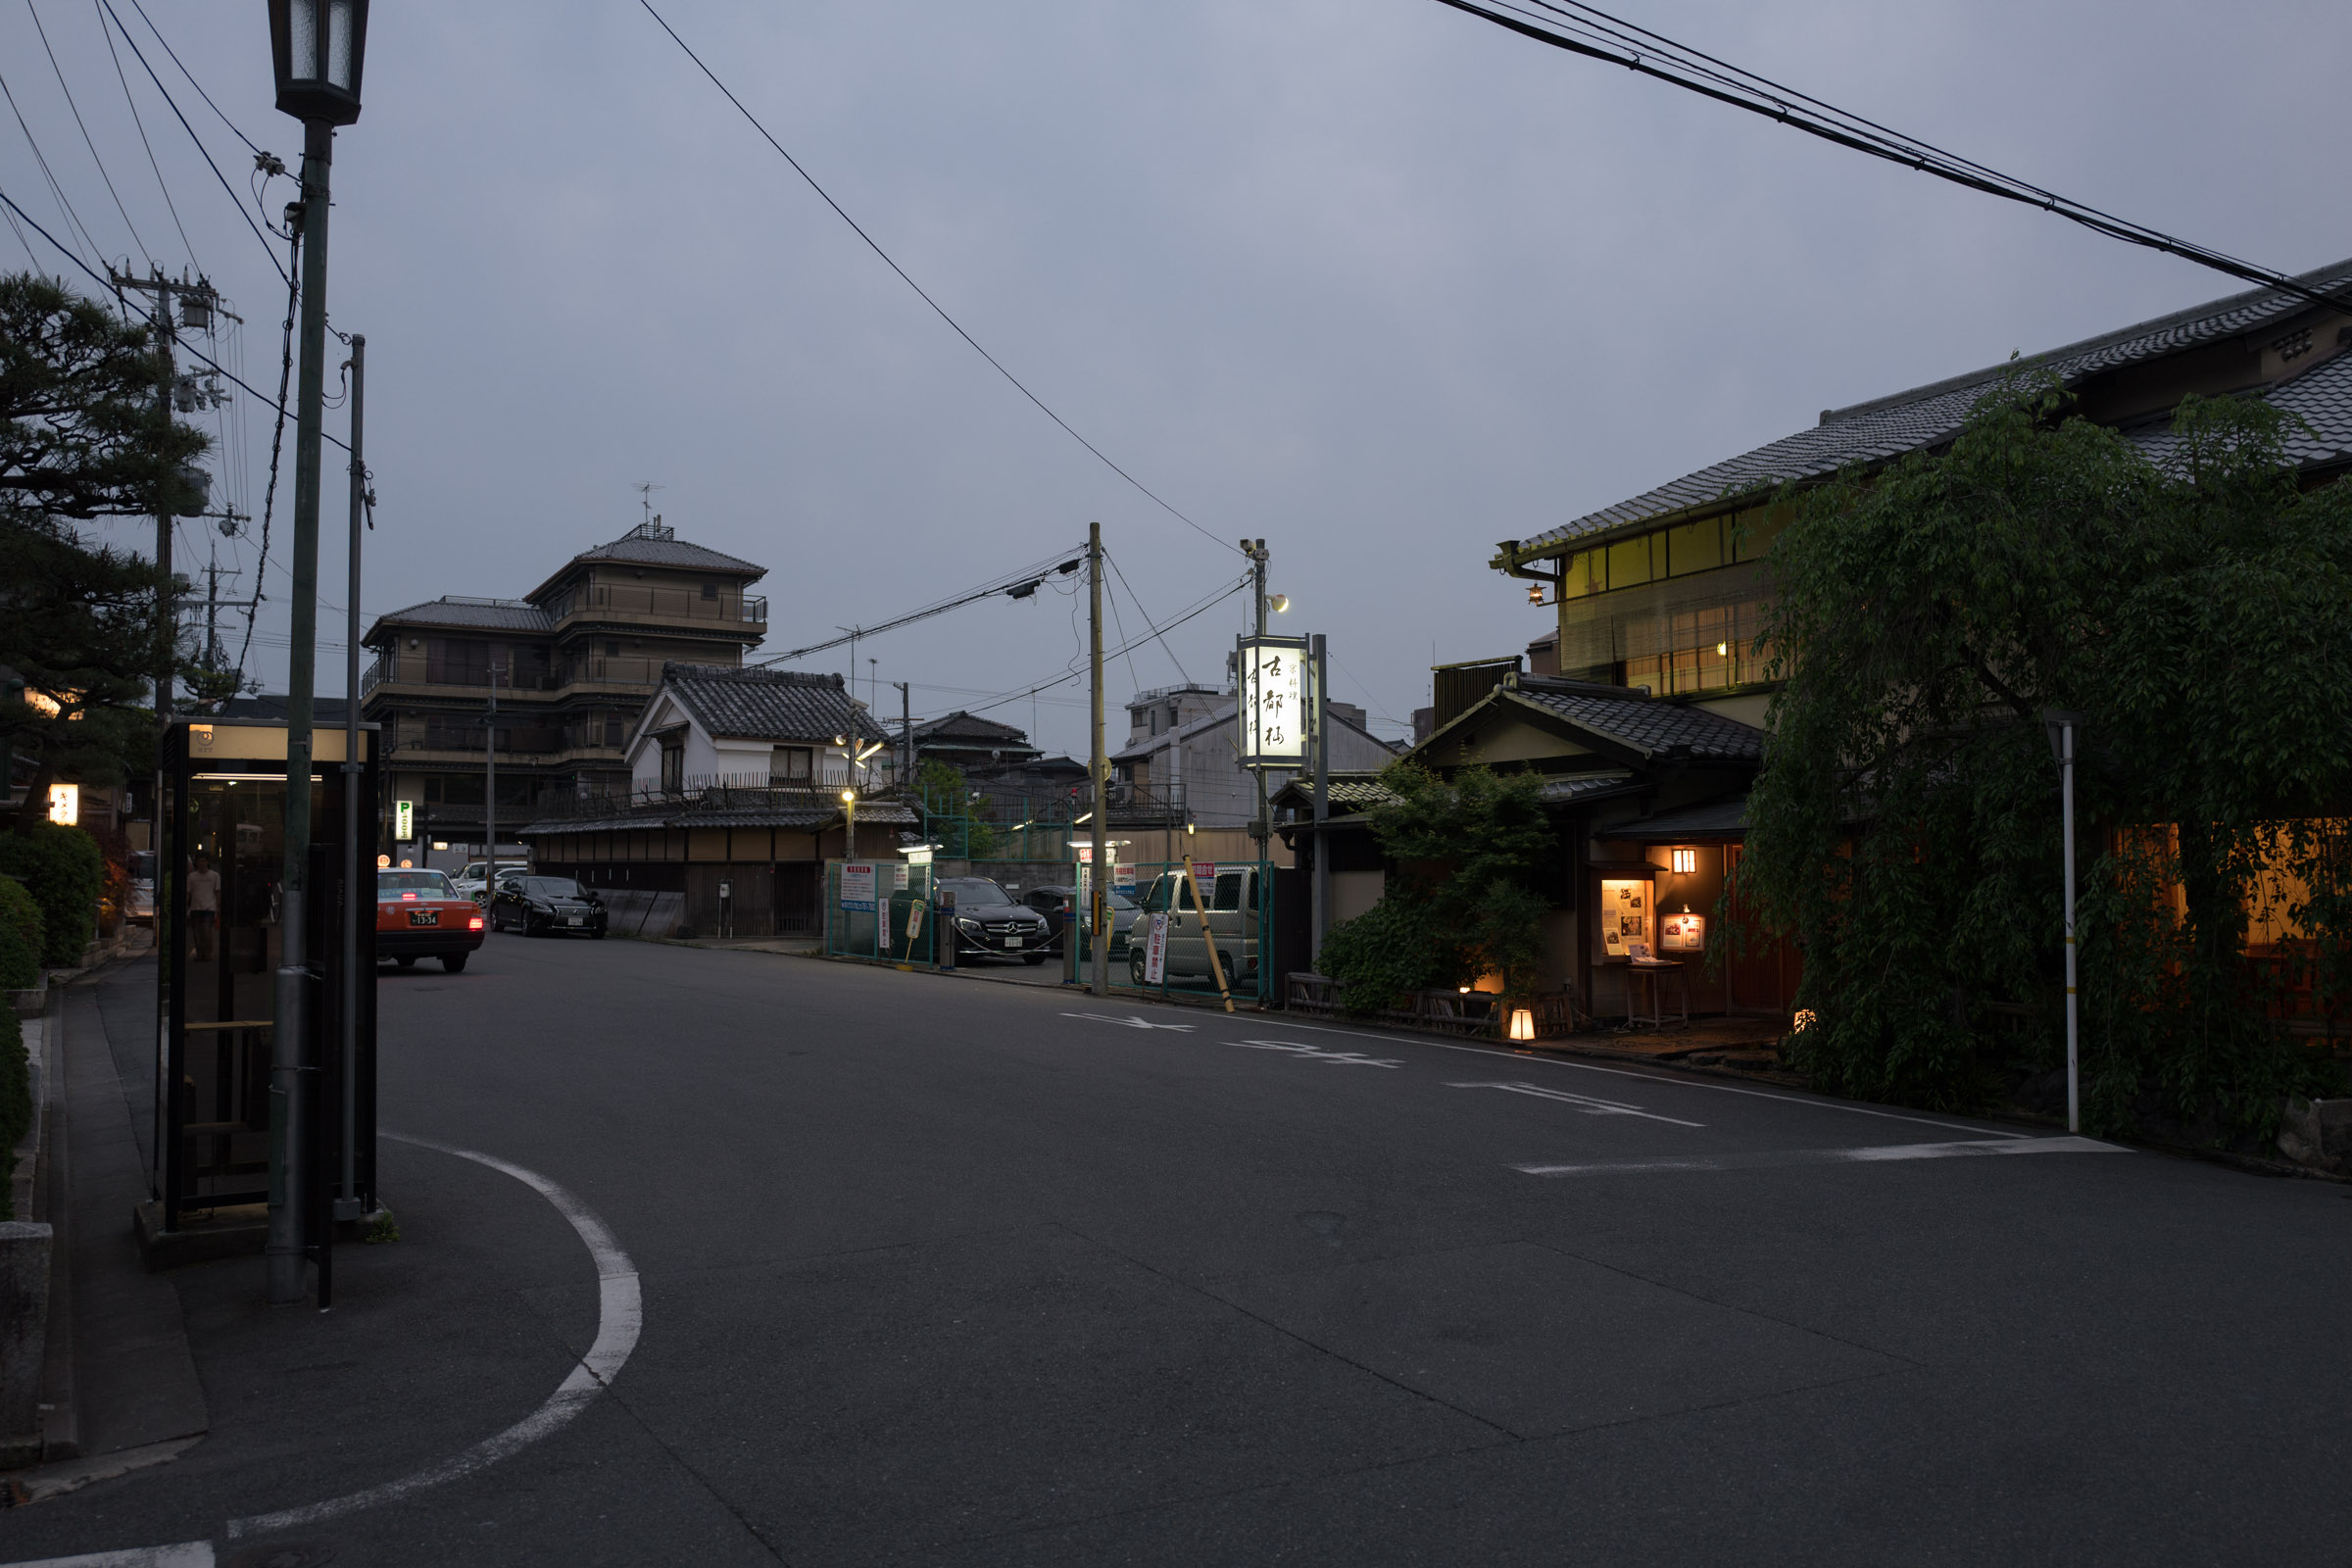 Gion neighbourhood